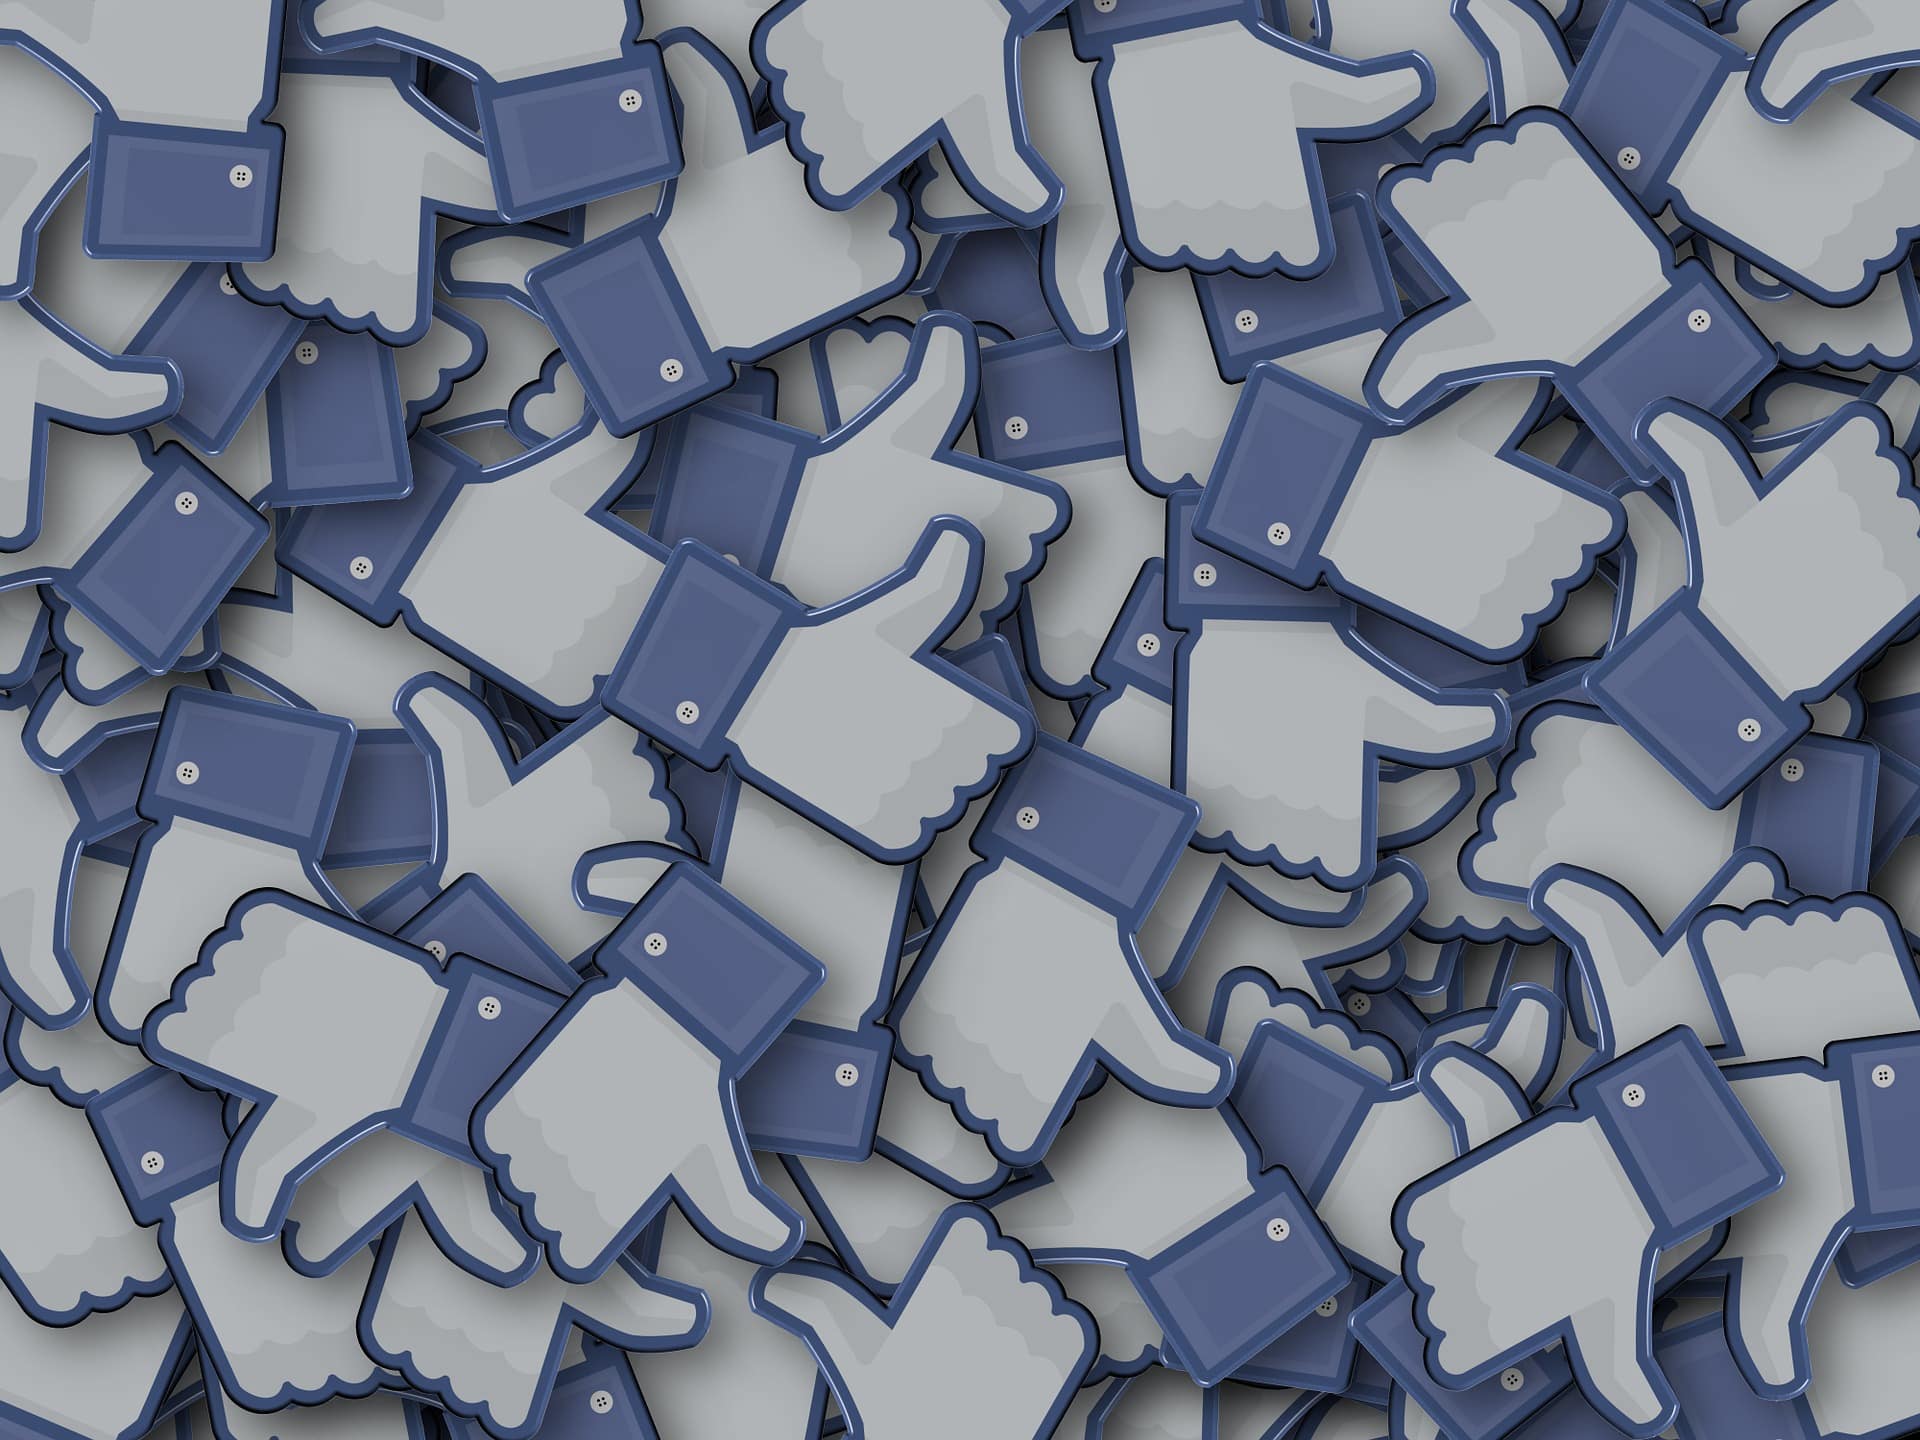 De nombreux pousses en l'air, symboles des likes sur Facebook.